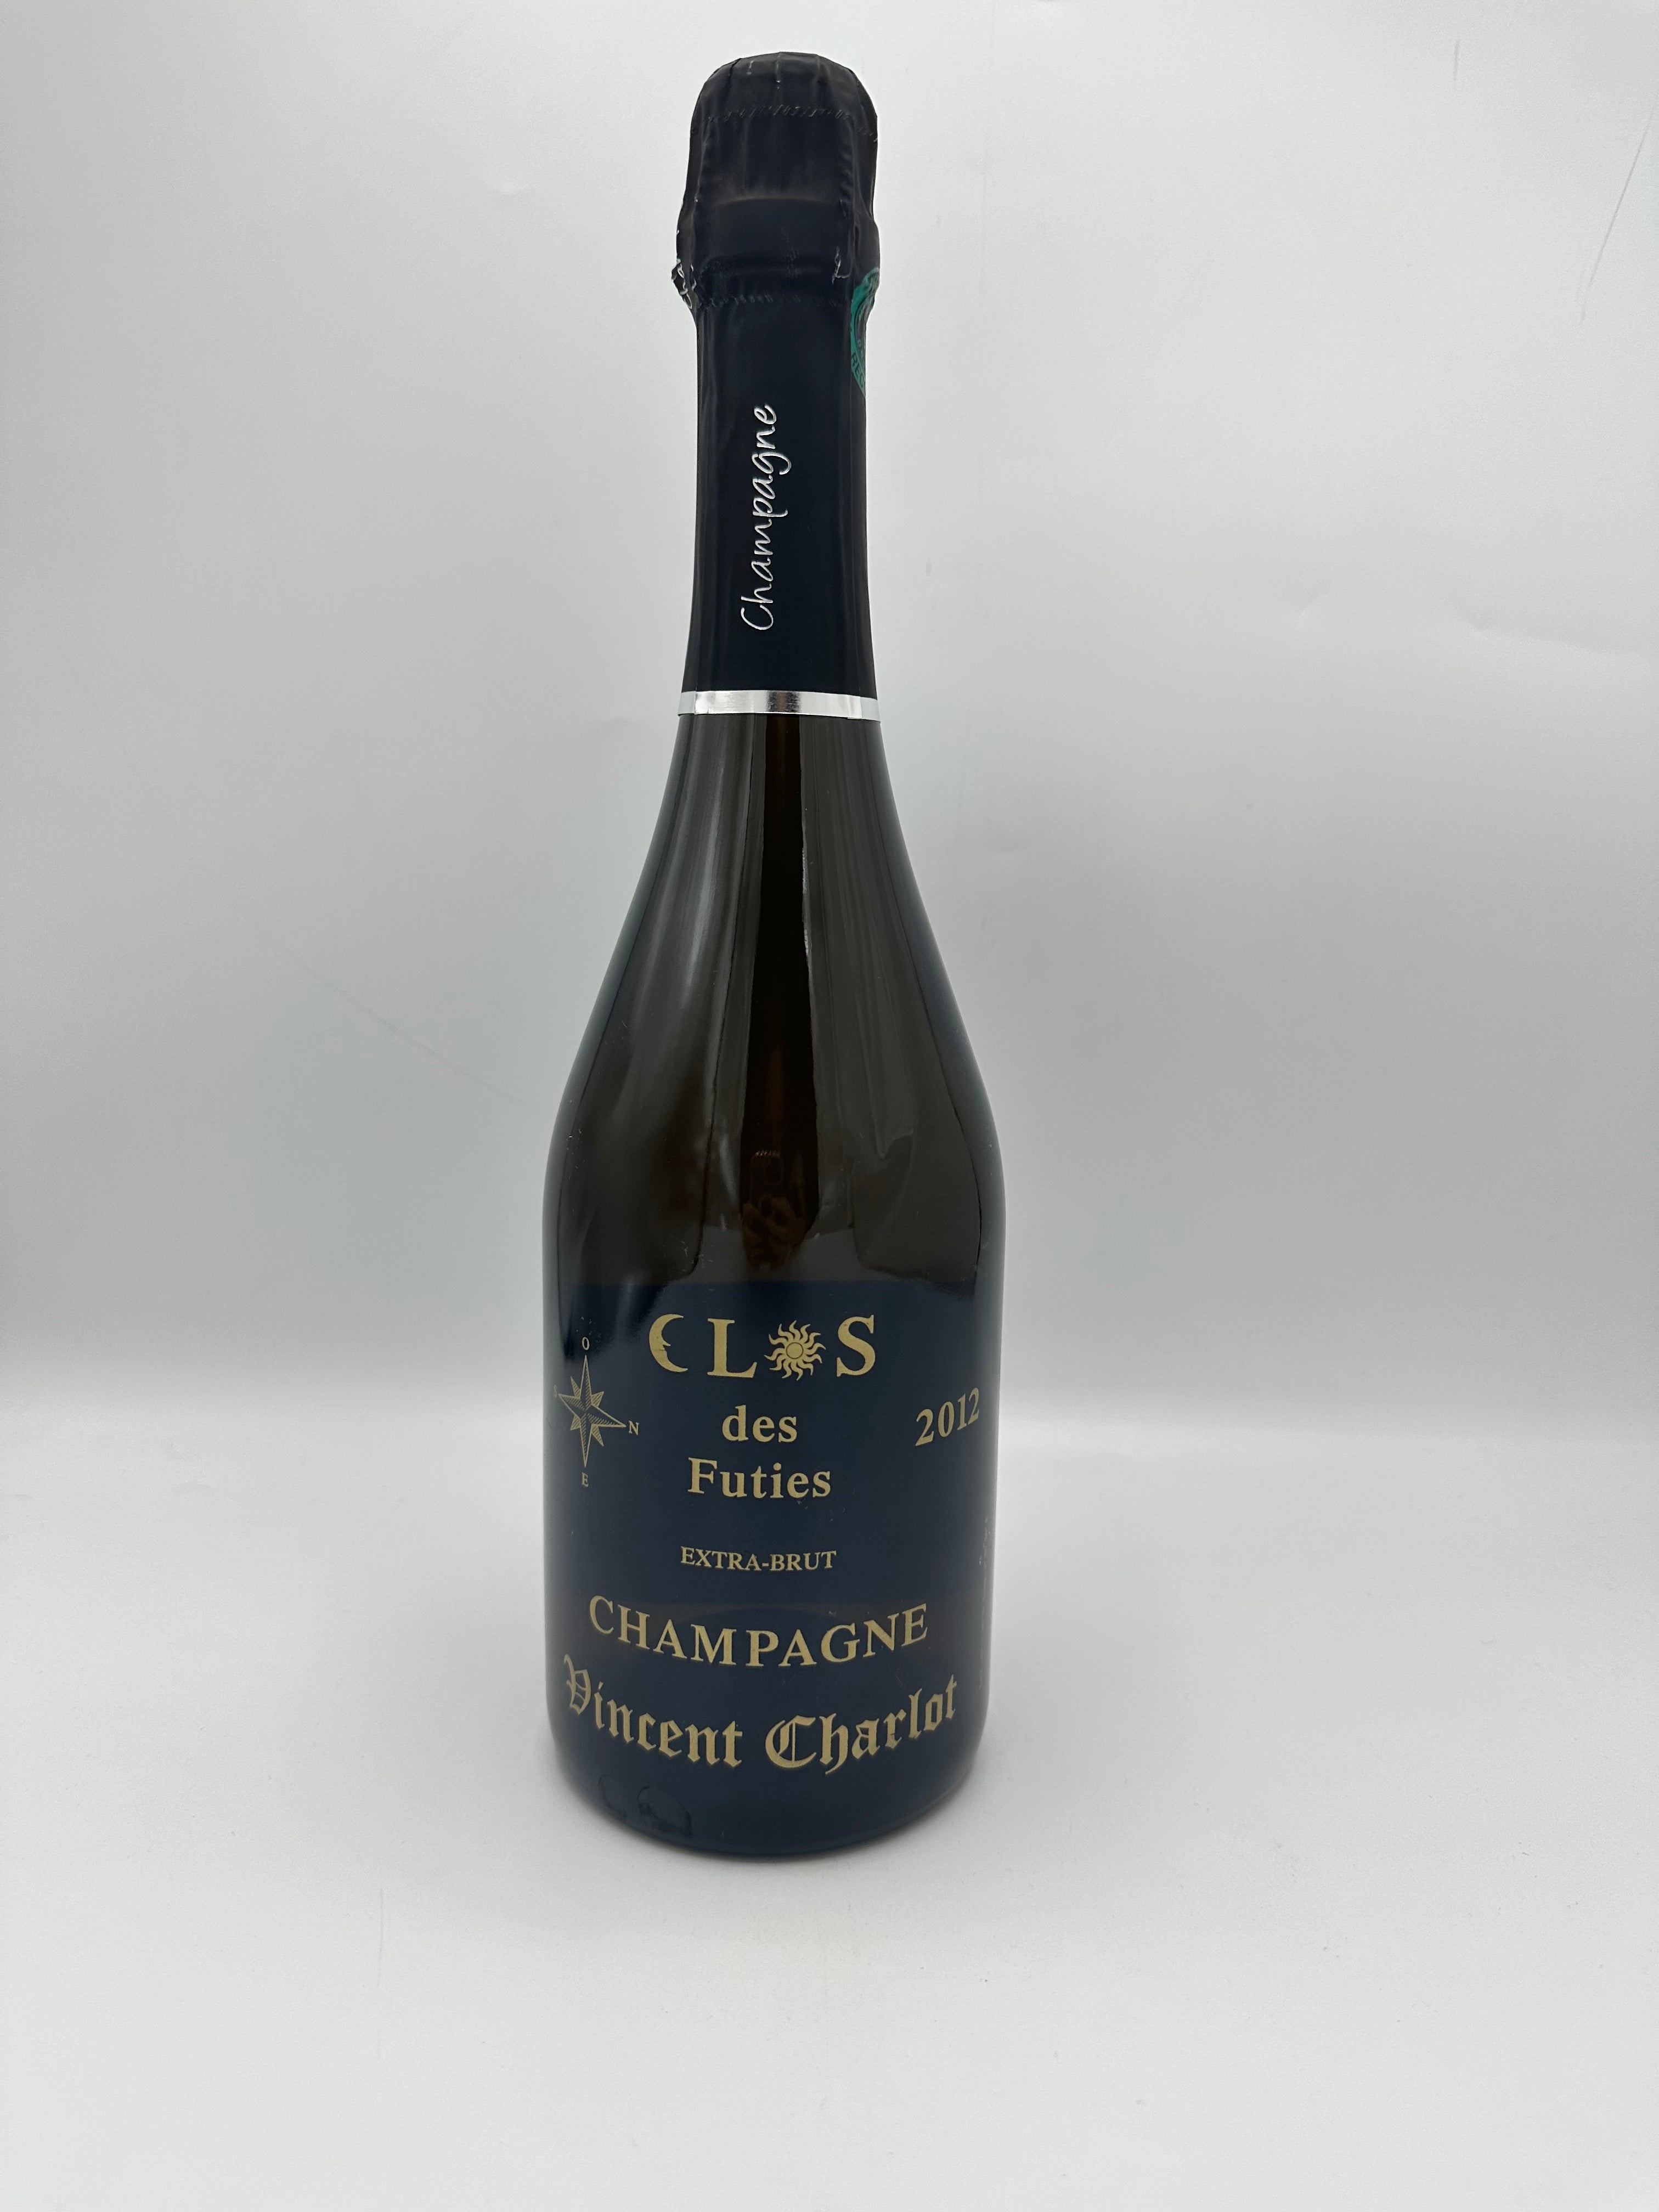 Champagne "Les Clos de Futies" 2012 Extra Brut - Domaine Vincent Charlot